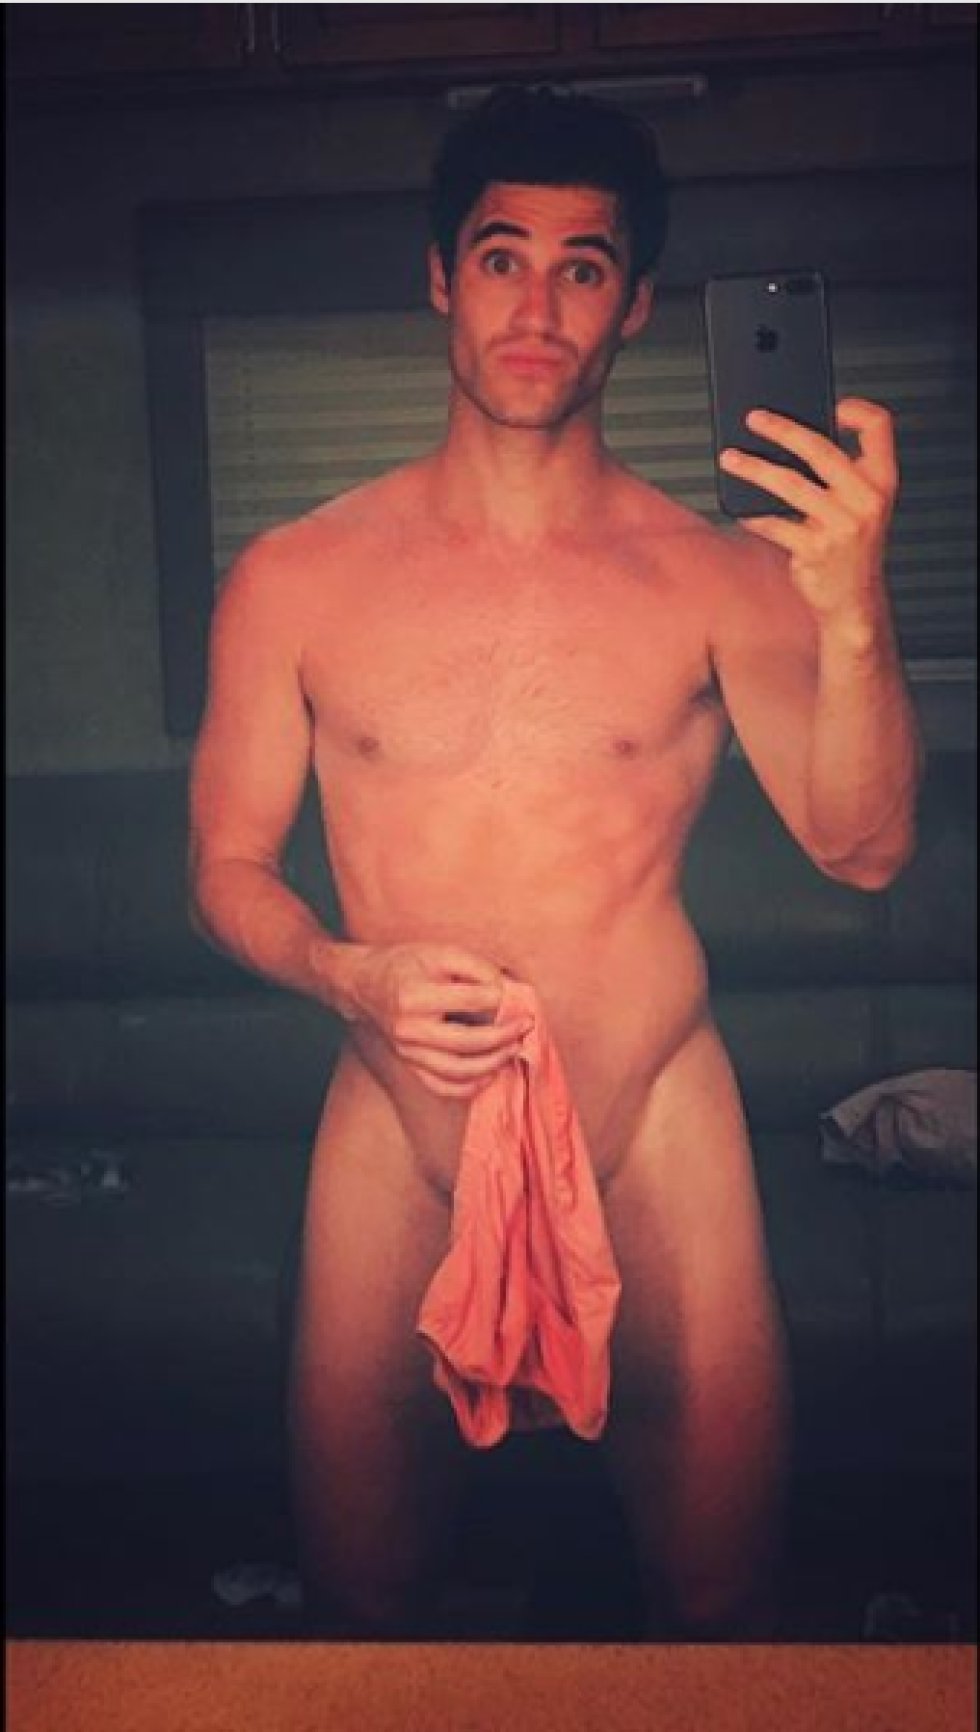 Fotos: La reivindicación sin ropa de los famosos: ellos también se desnudan  en Instagram | ICON | EL PAÍS